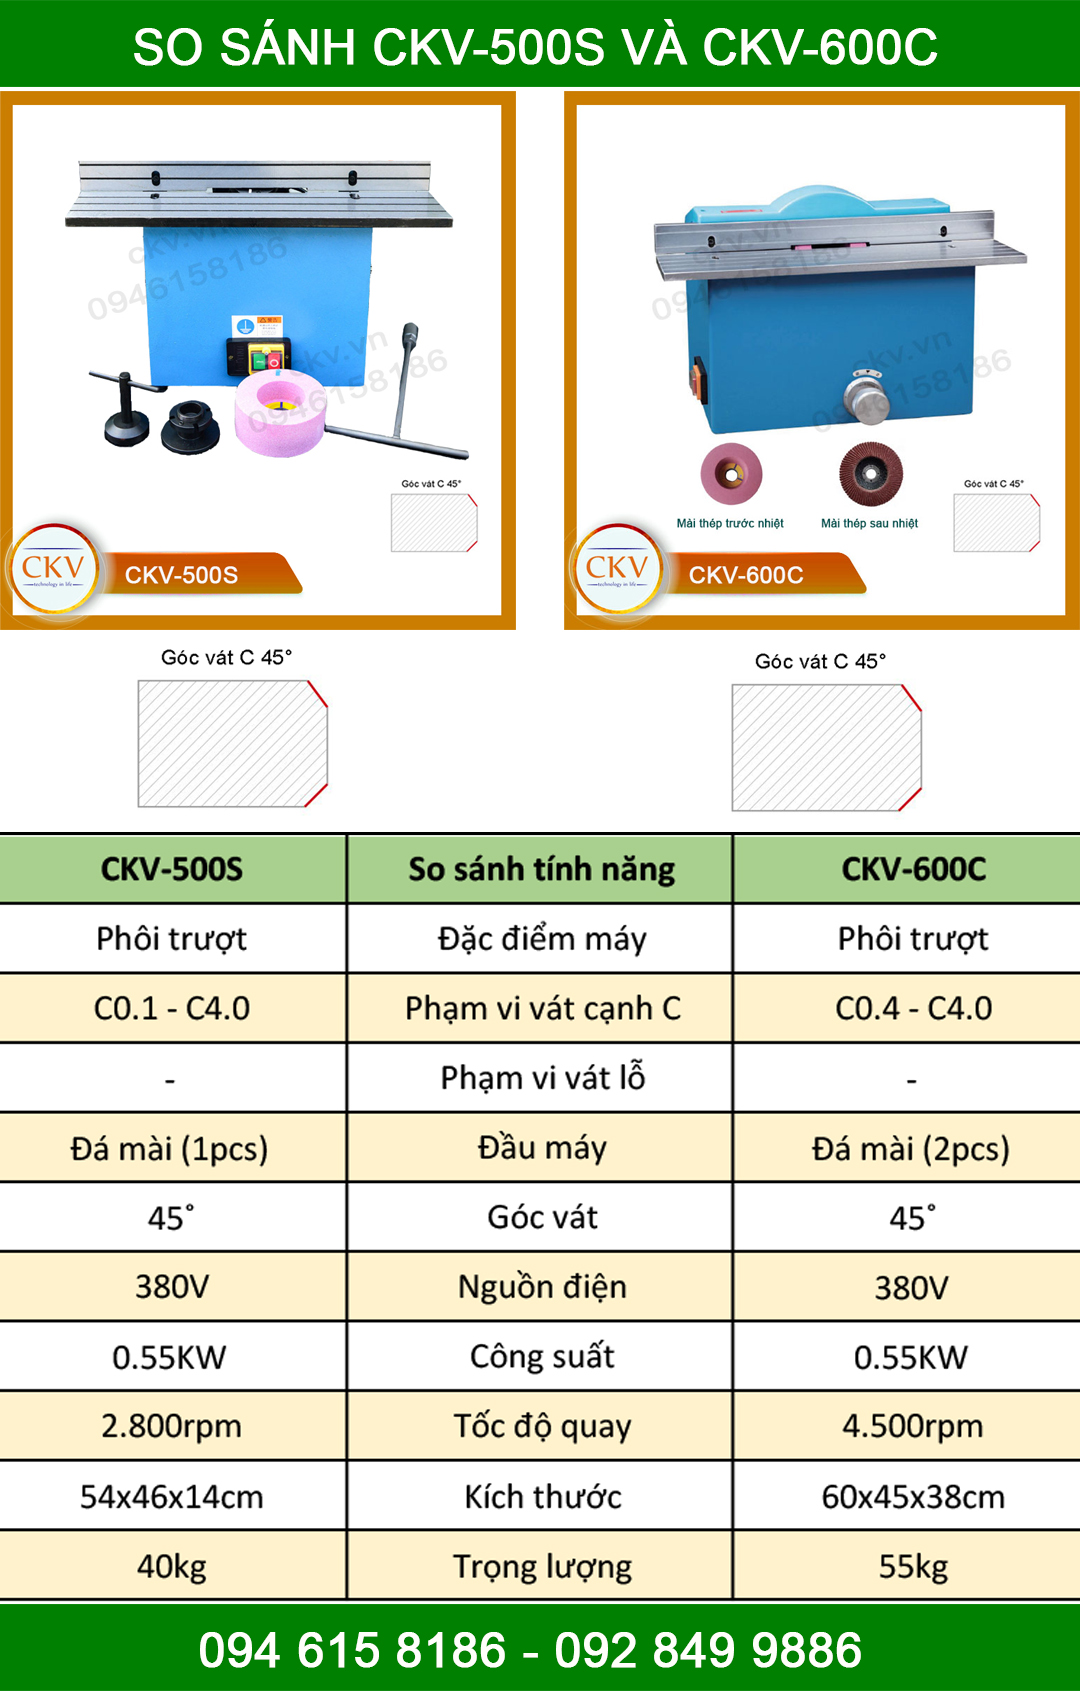 So sánh CKV-500S với CKV-600C